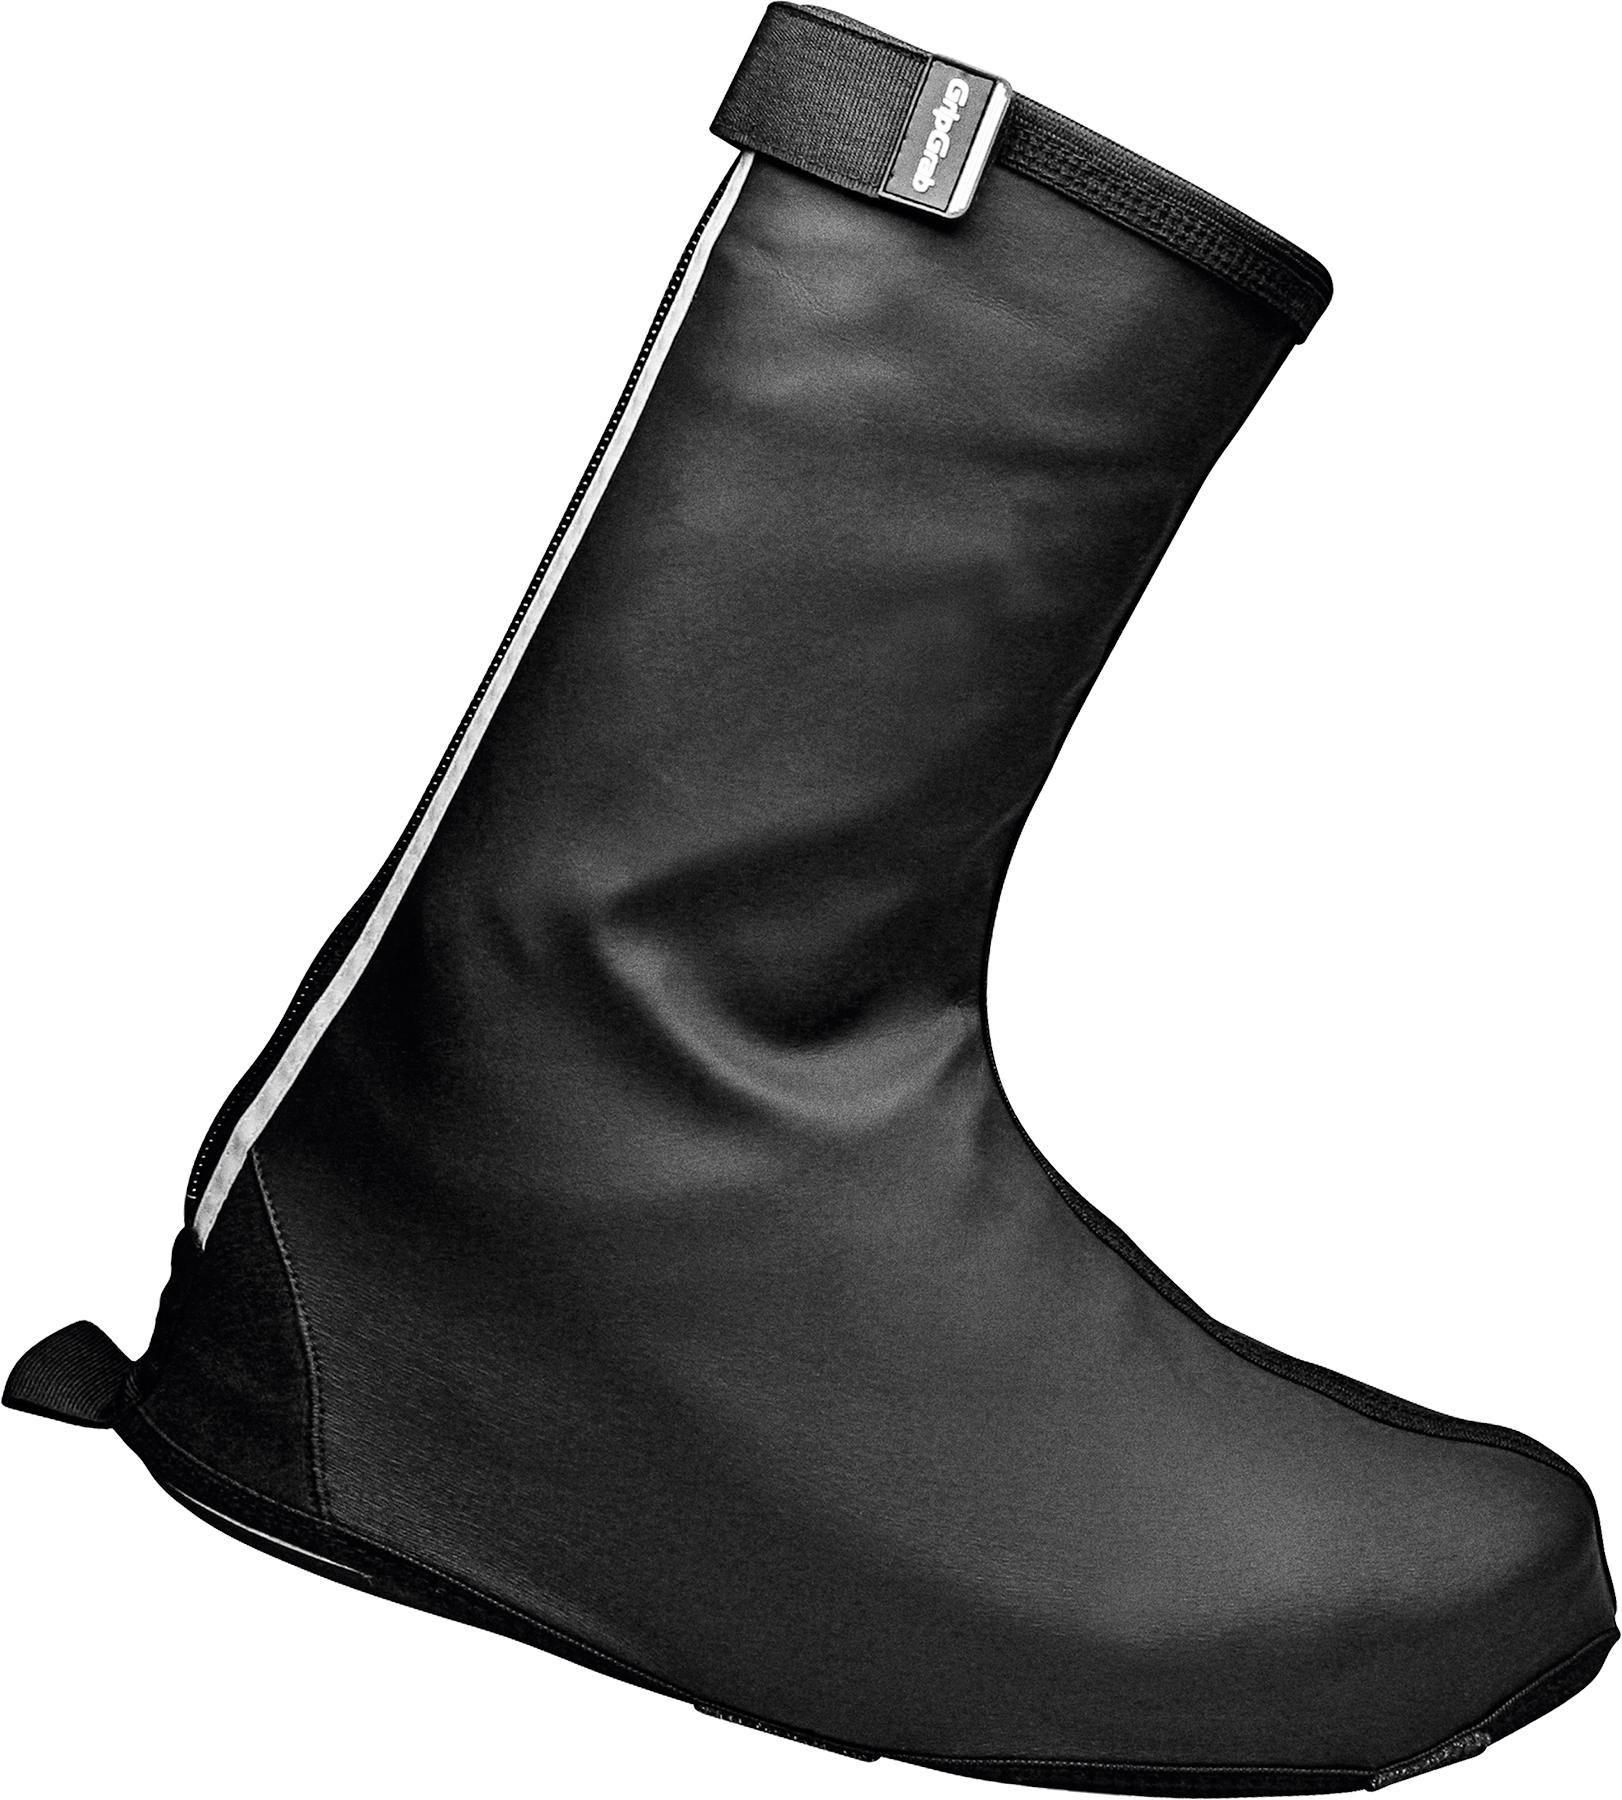 Gripgrab Dryfoot Everyday Waterproof Shoe Cover - Black